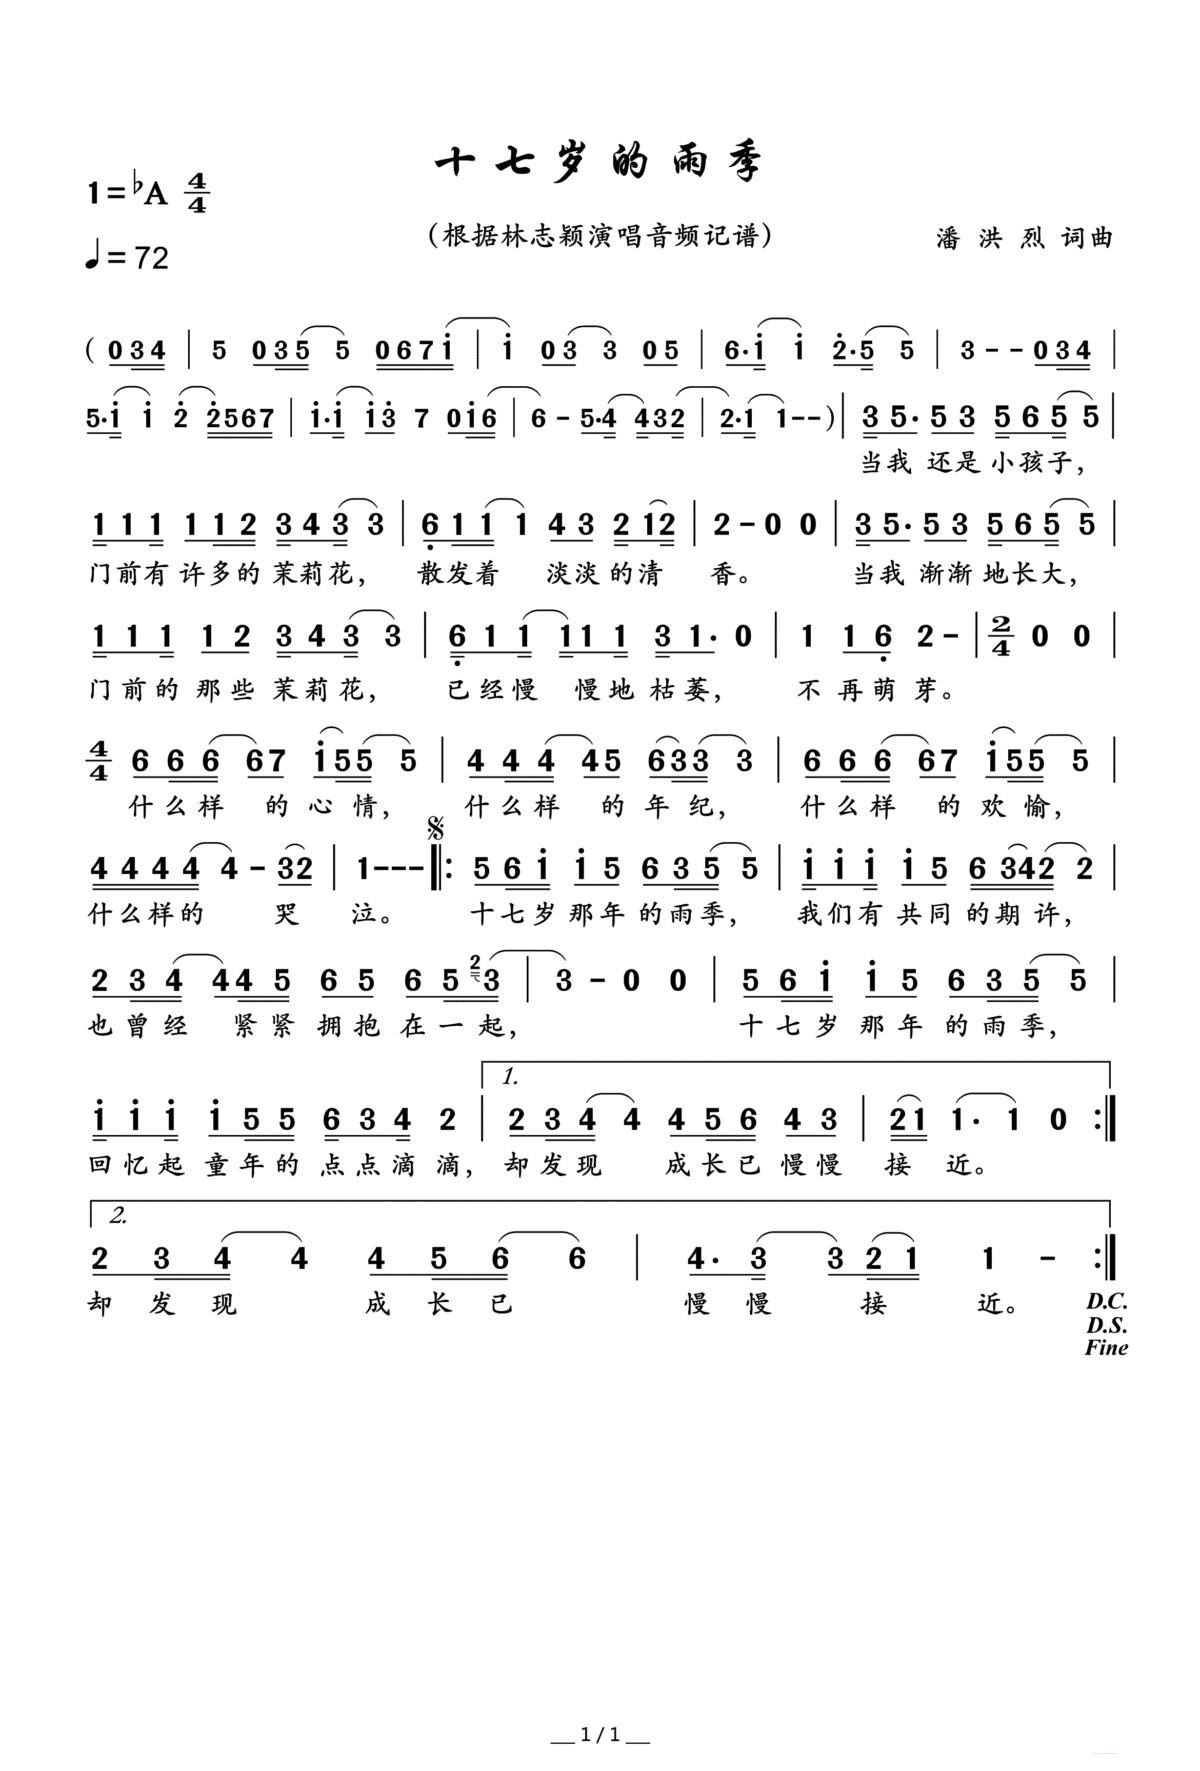 【十七岁的雨季】的简谱乐谱及歌词 – 林志颖 (Jimmy Lin)